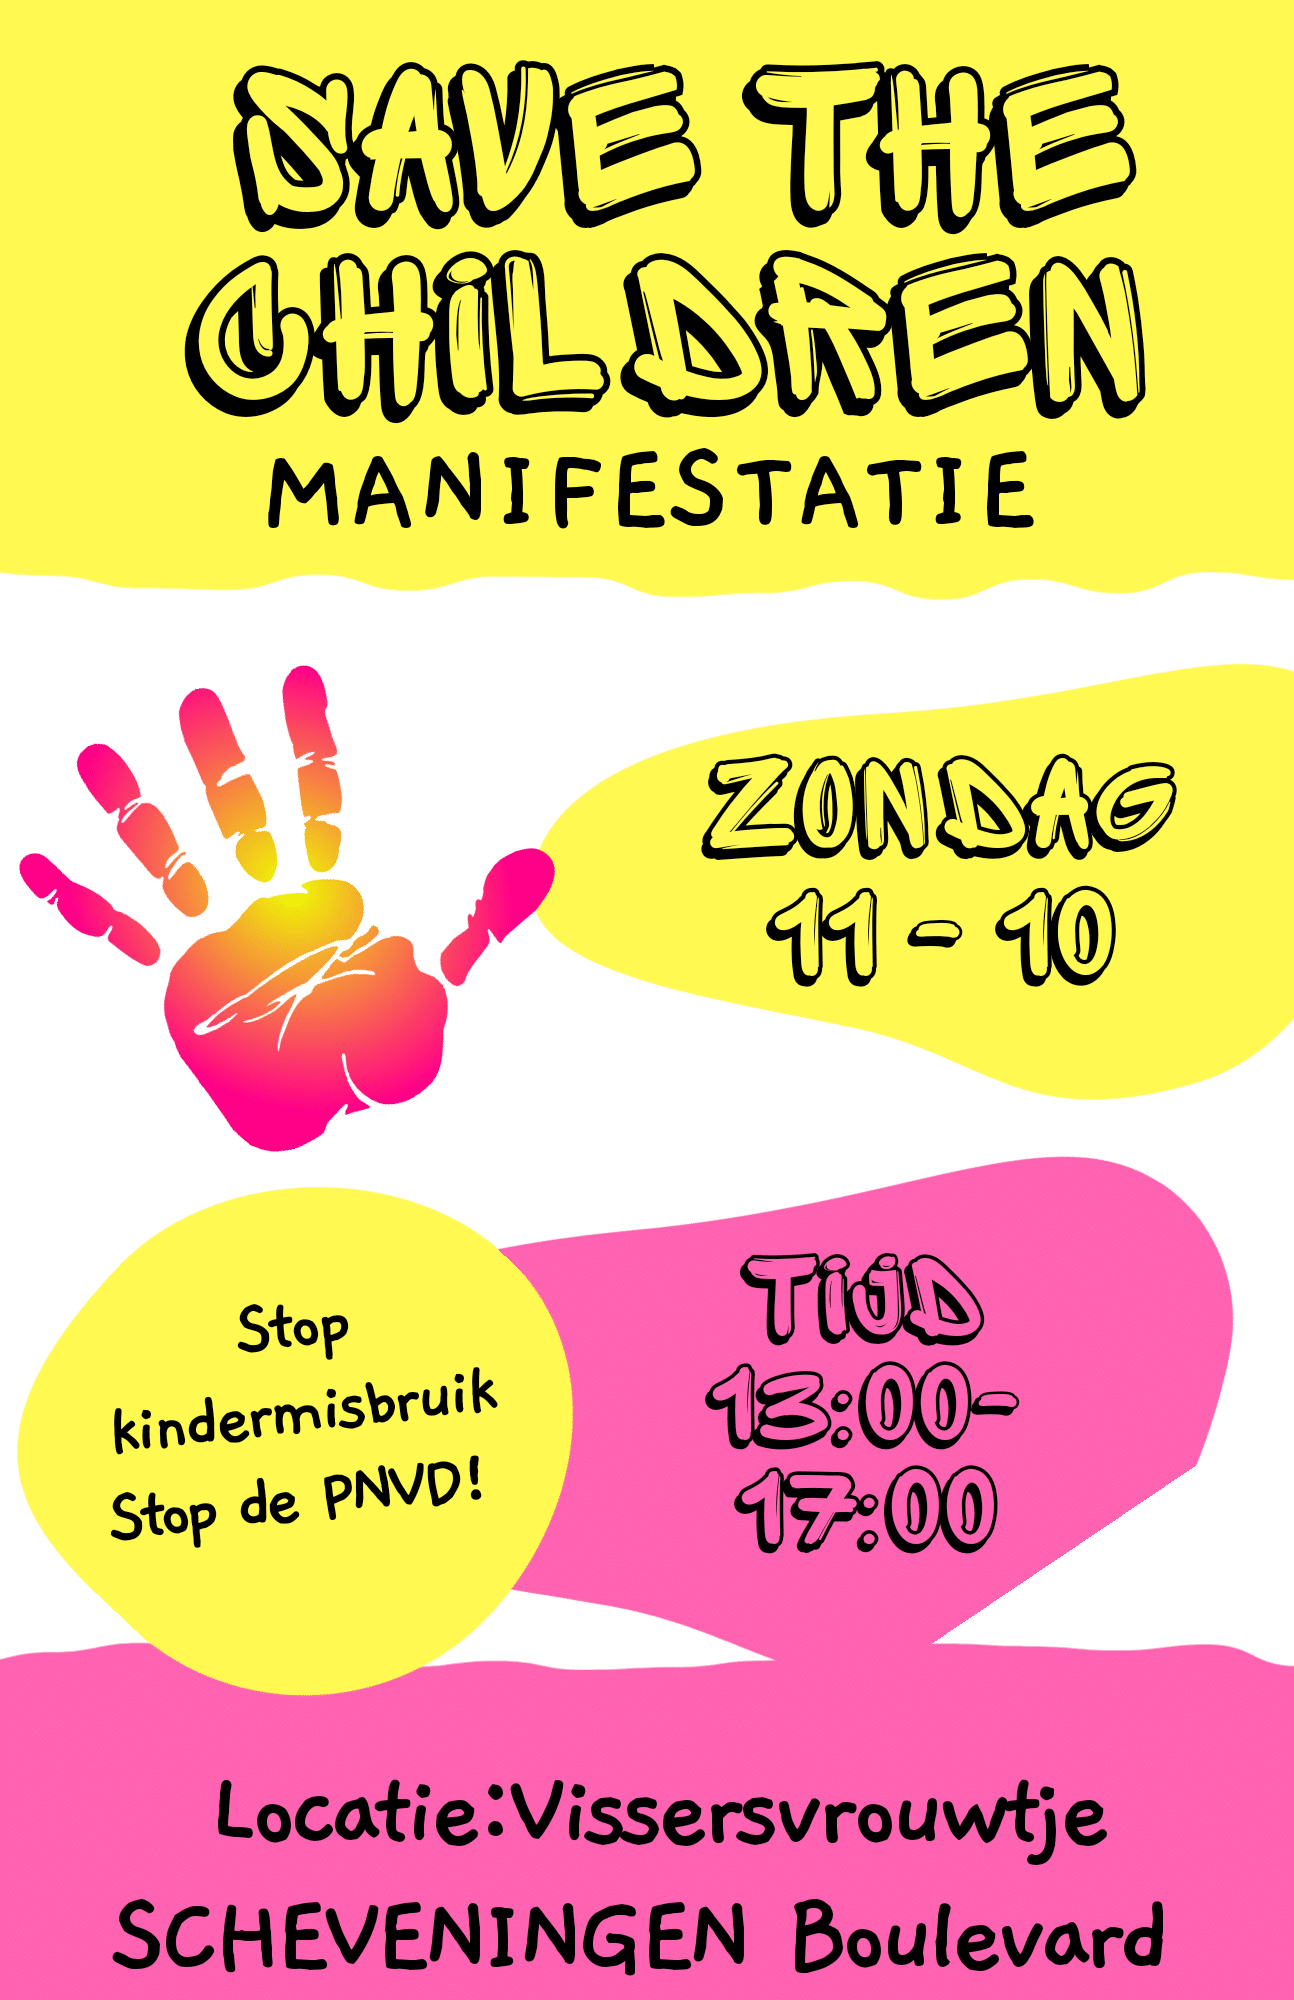 Kom ook! Zondag 11 Oktober: Manifestatie Save the children / tegen kindermisbruik en stop de PNVD